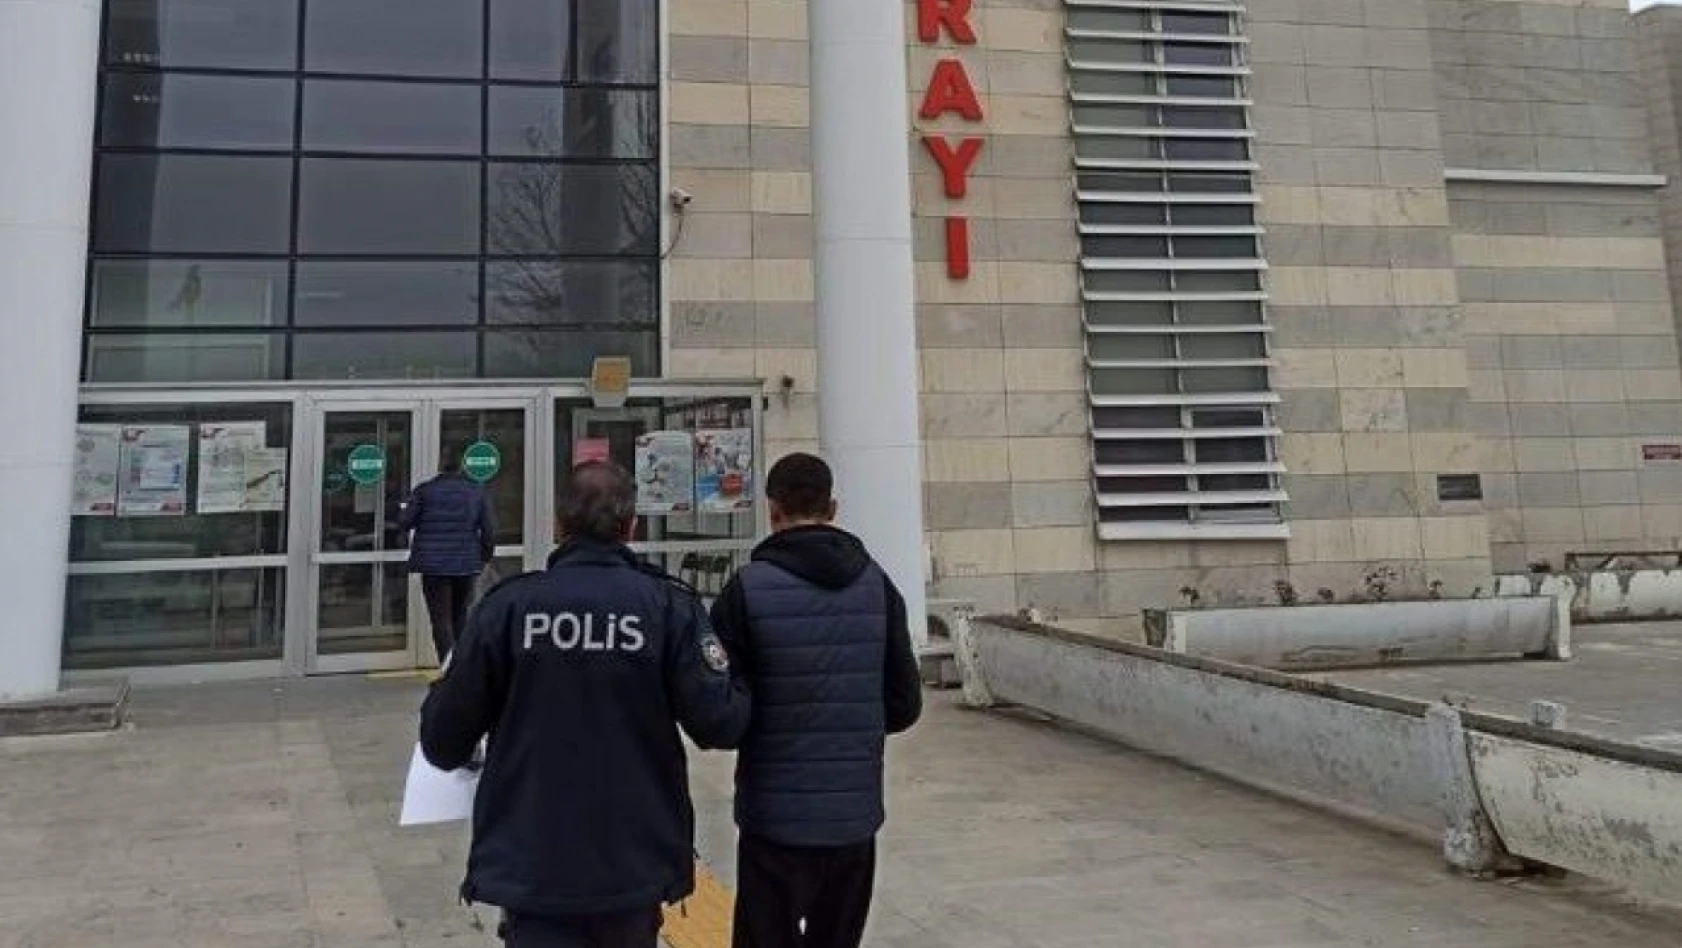 Elazığ'da sokak satıcılarına operasyon: 4 gözaltı